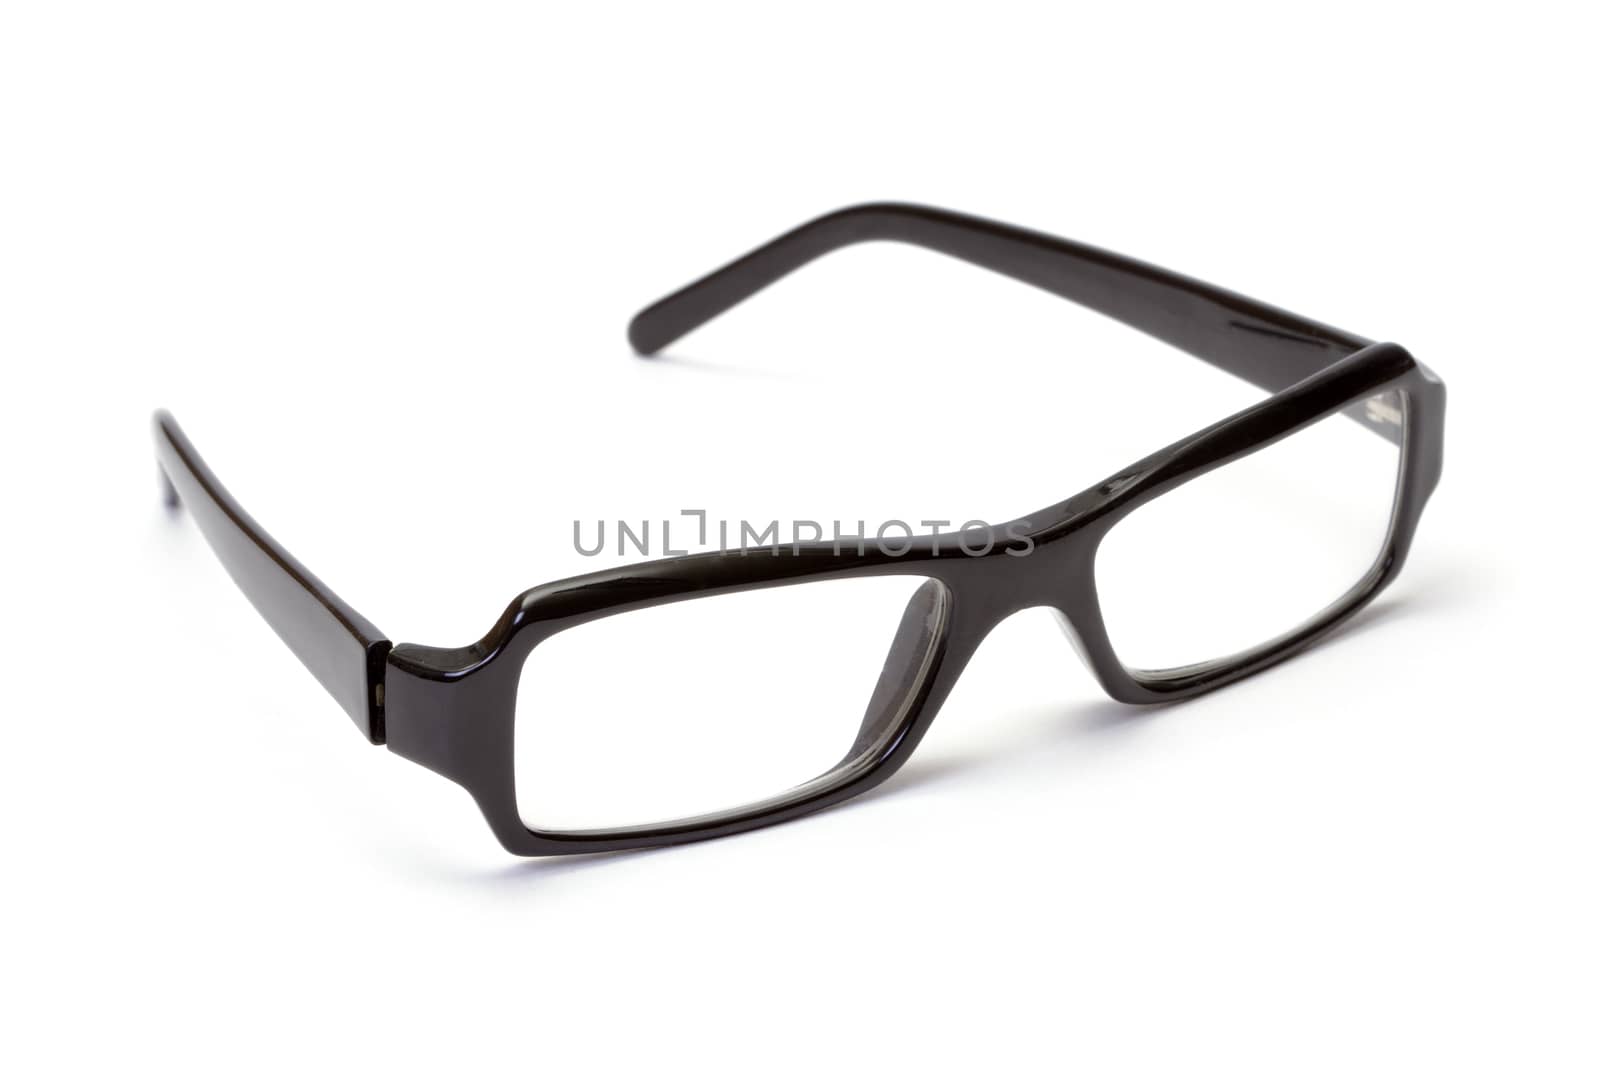 Black plastic glasses on white background